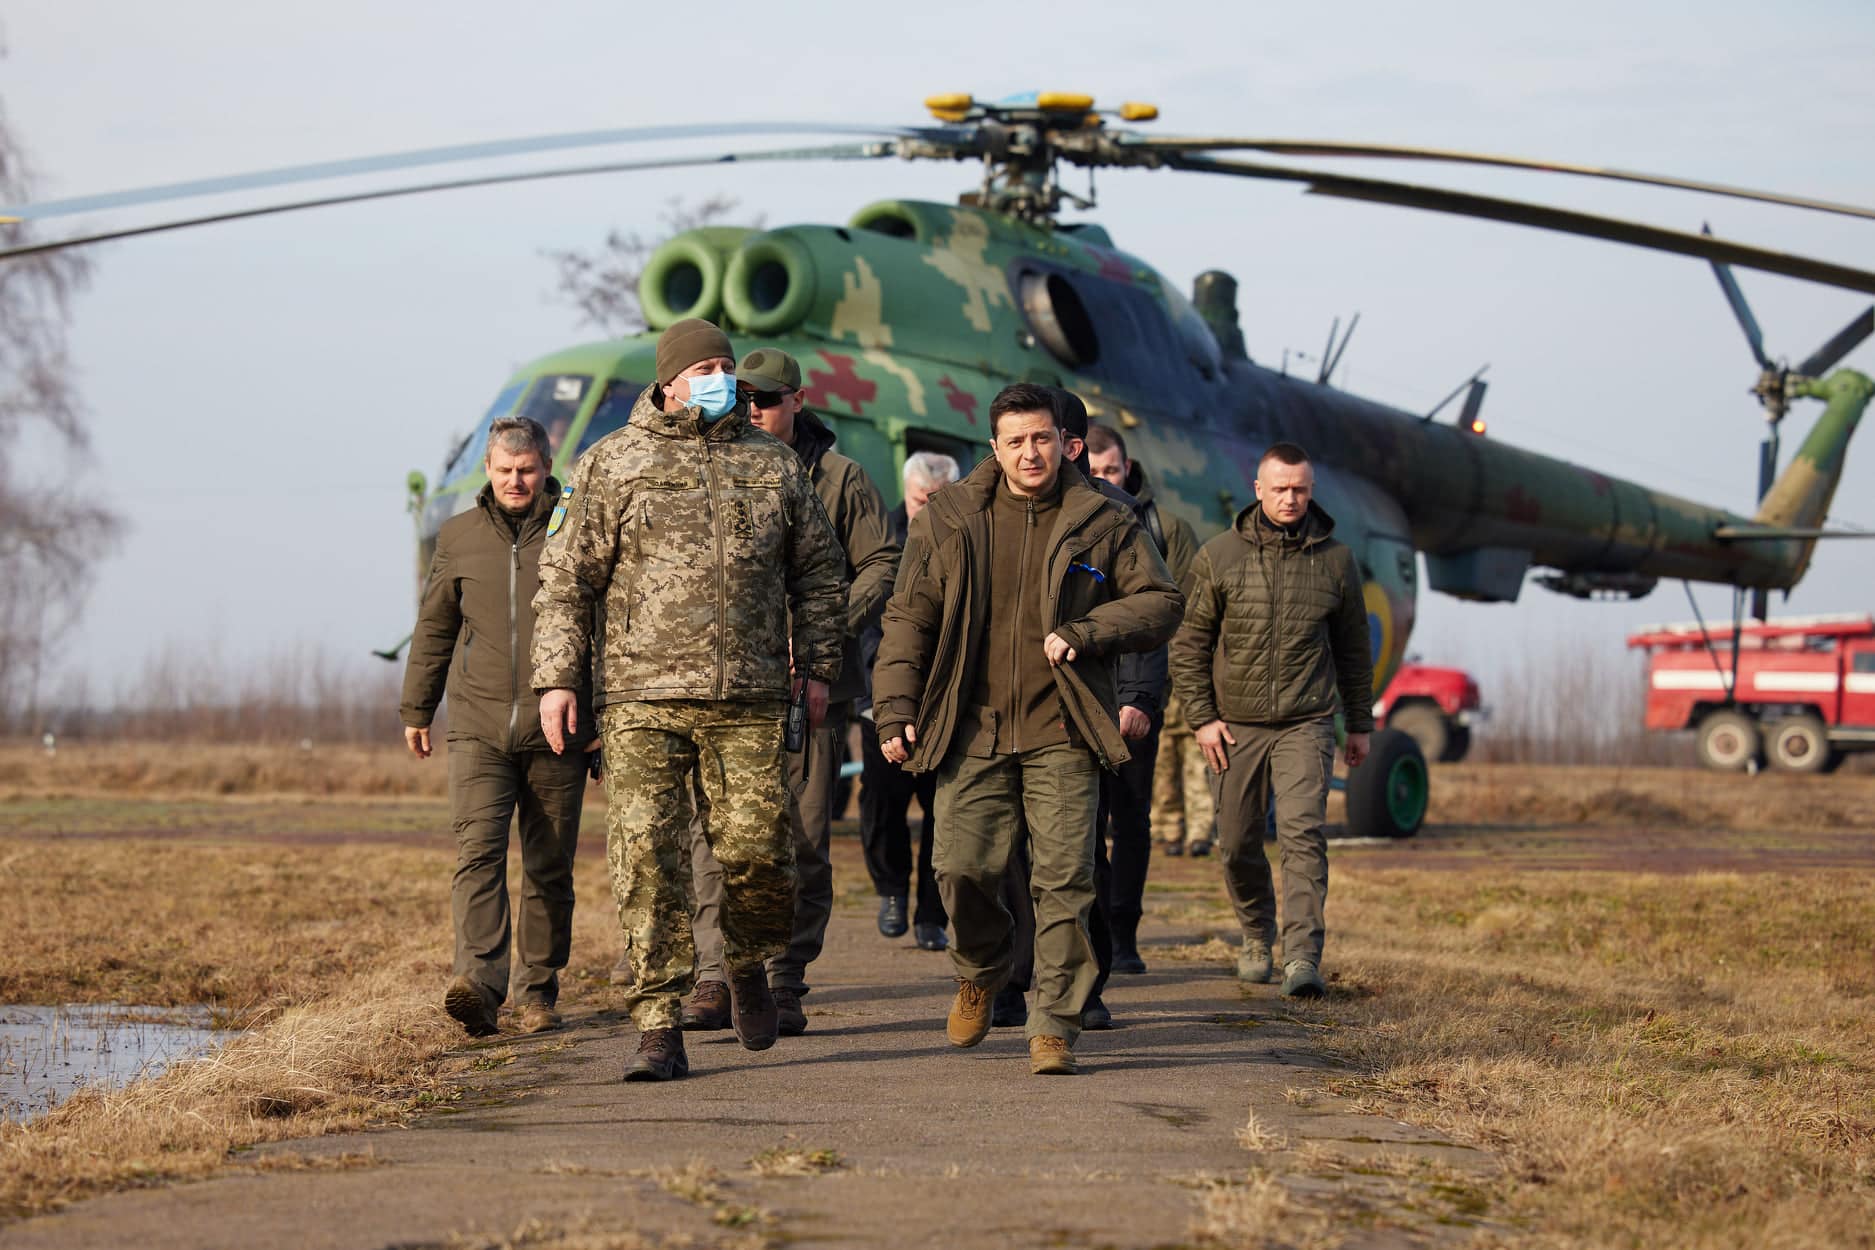 נשיא אוקראינה וולודימיר זלנסקי מבקר ביחידה צבאית ימים ספורים לפני פלישת רוסיה לאוקראינה, 16 בפברואר 2022 (צילום: עמוד הפייסבוק של נשיא אוקראינה)